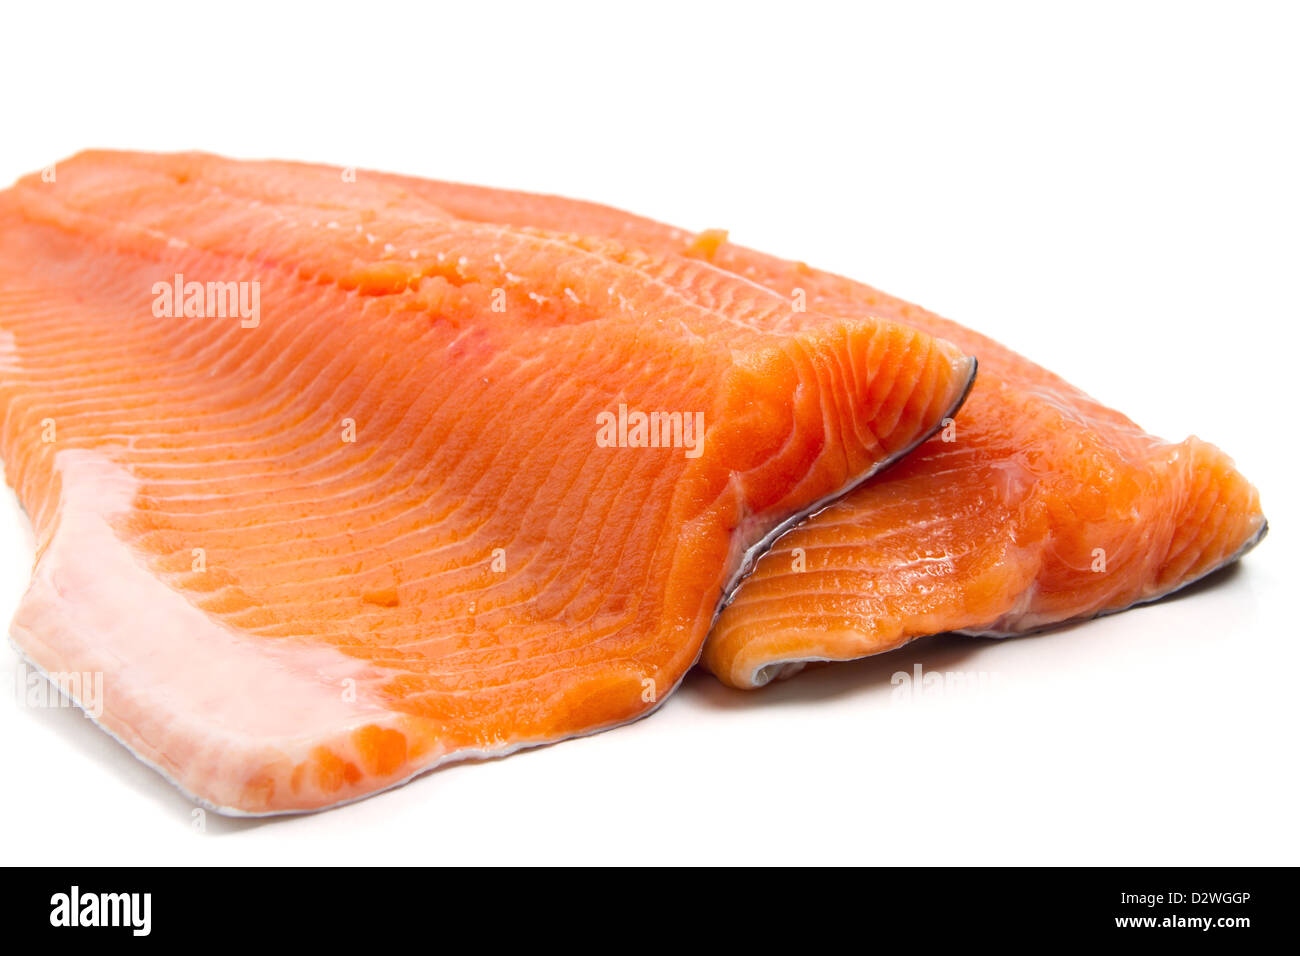 Dettaglio di salmone filetti di trota su sfondo bianco Foto Stock